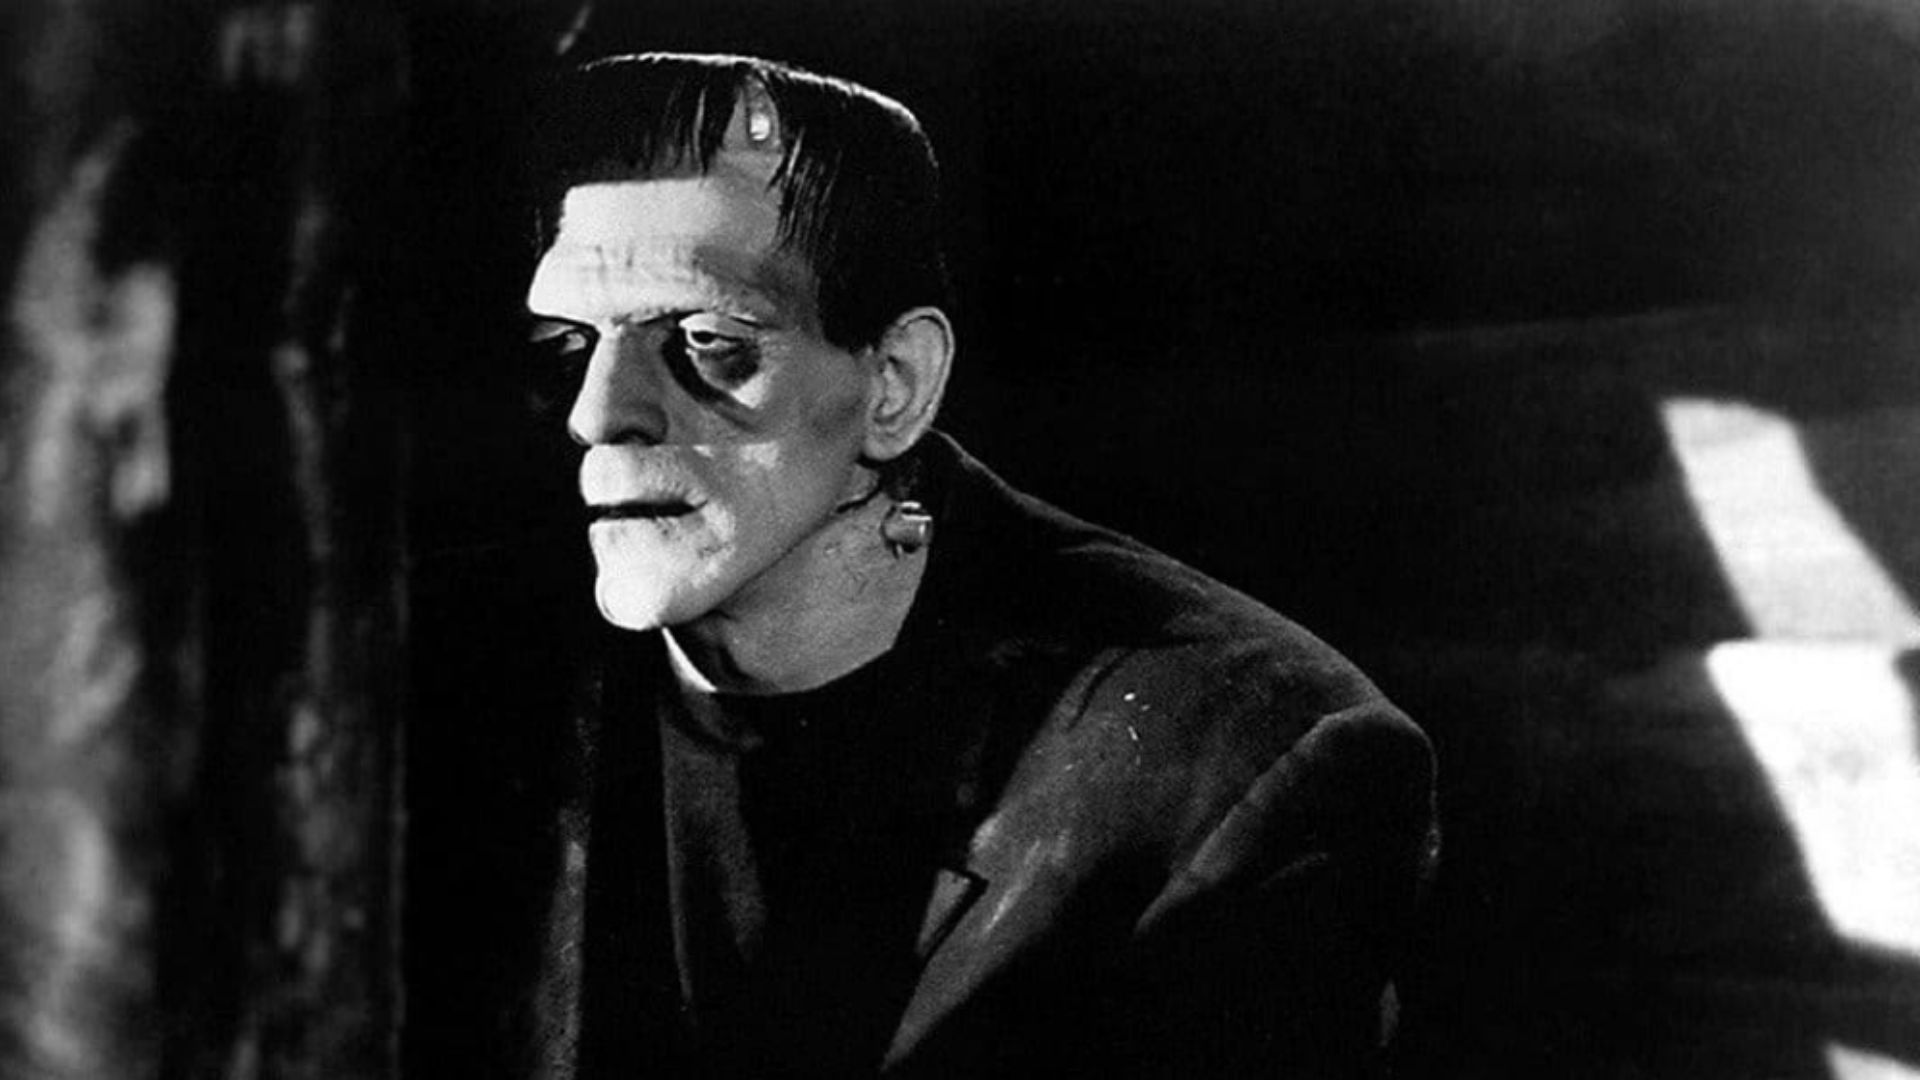 Recensione: Frankenstein, Diretto da James Whale con Boris Karloff